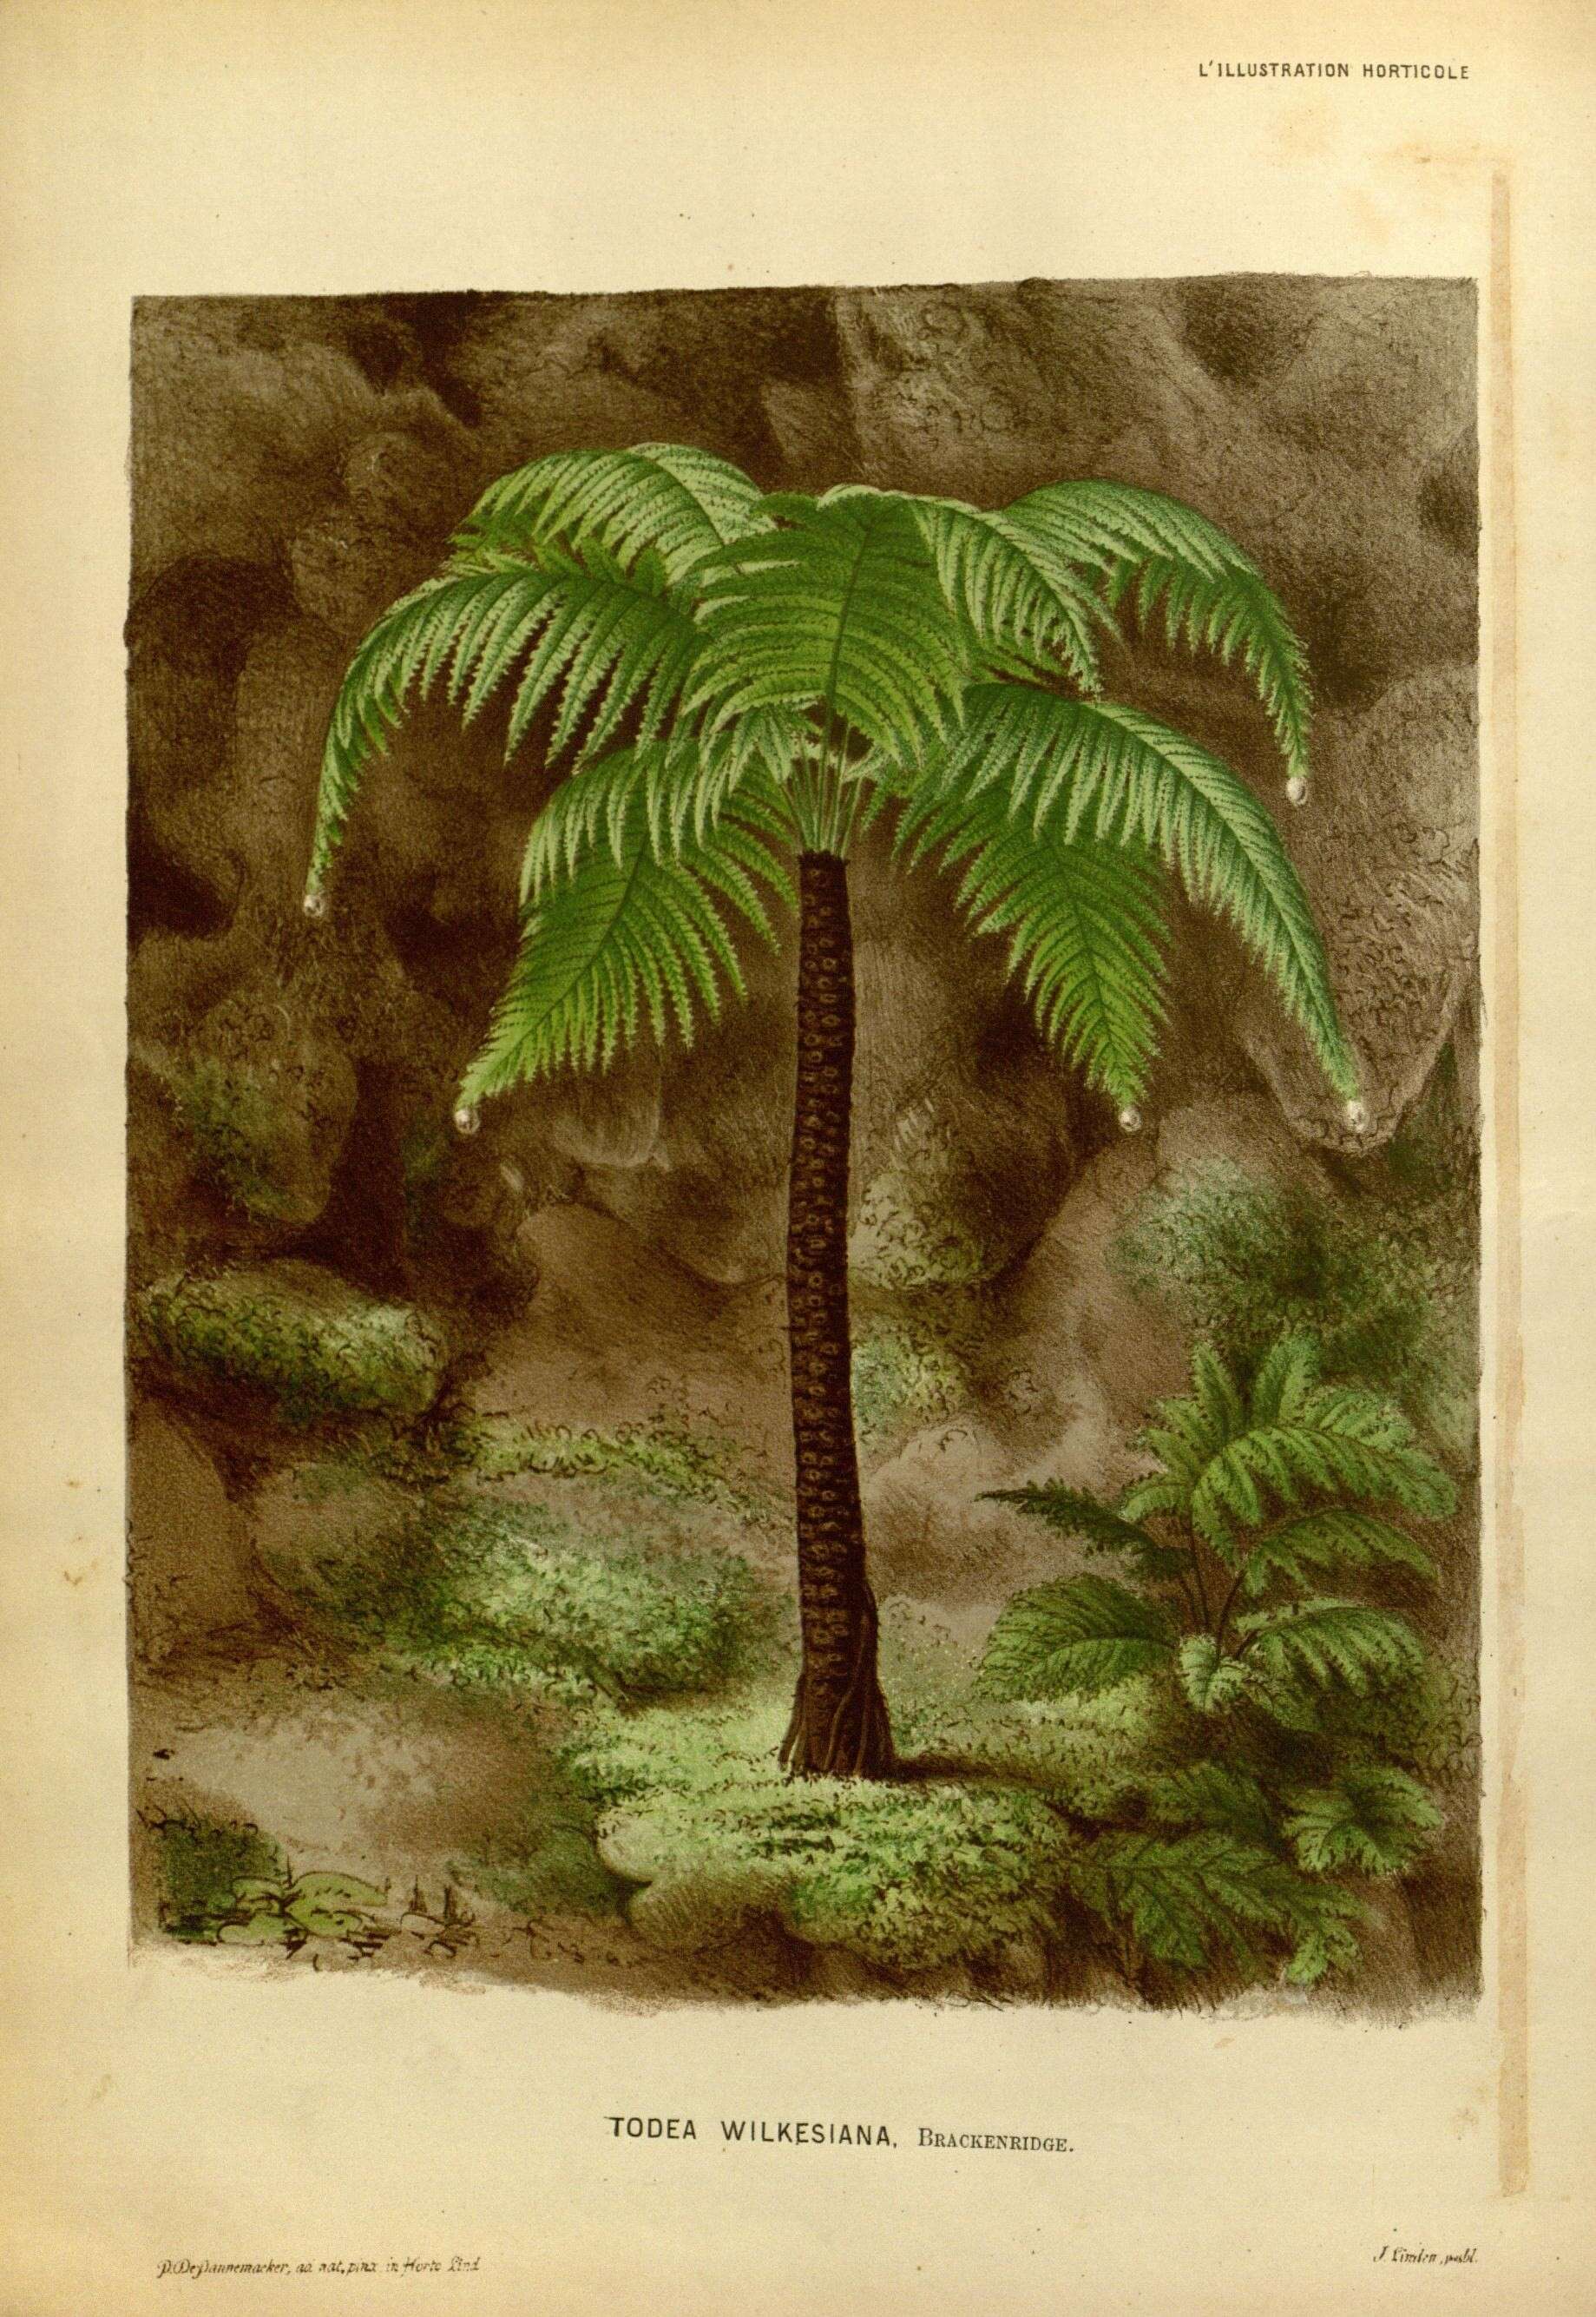 Image of Fijian Tree Fern